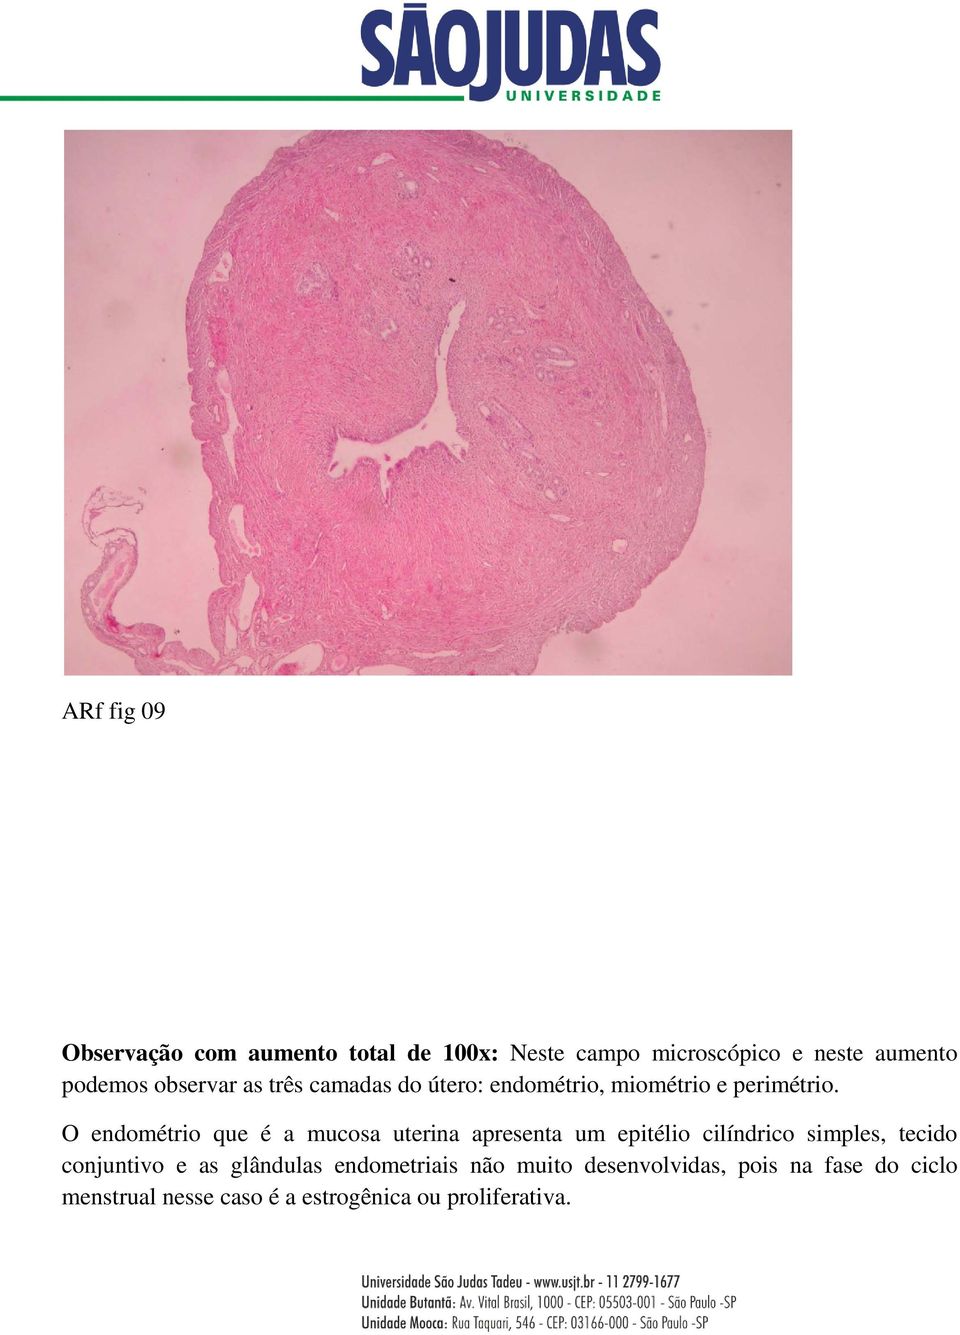 O endométrio que é a mucosa uterina apresenta um epitélio cilíndrico simples, tecido conjuntivo e